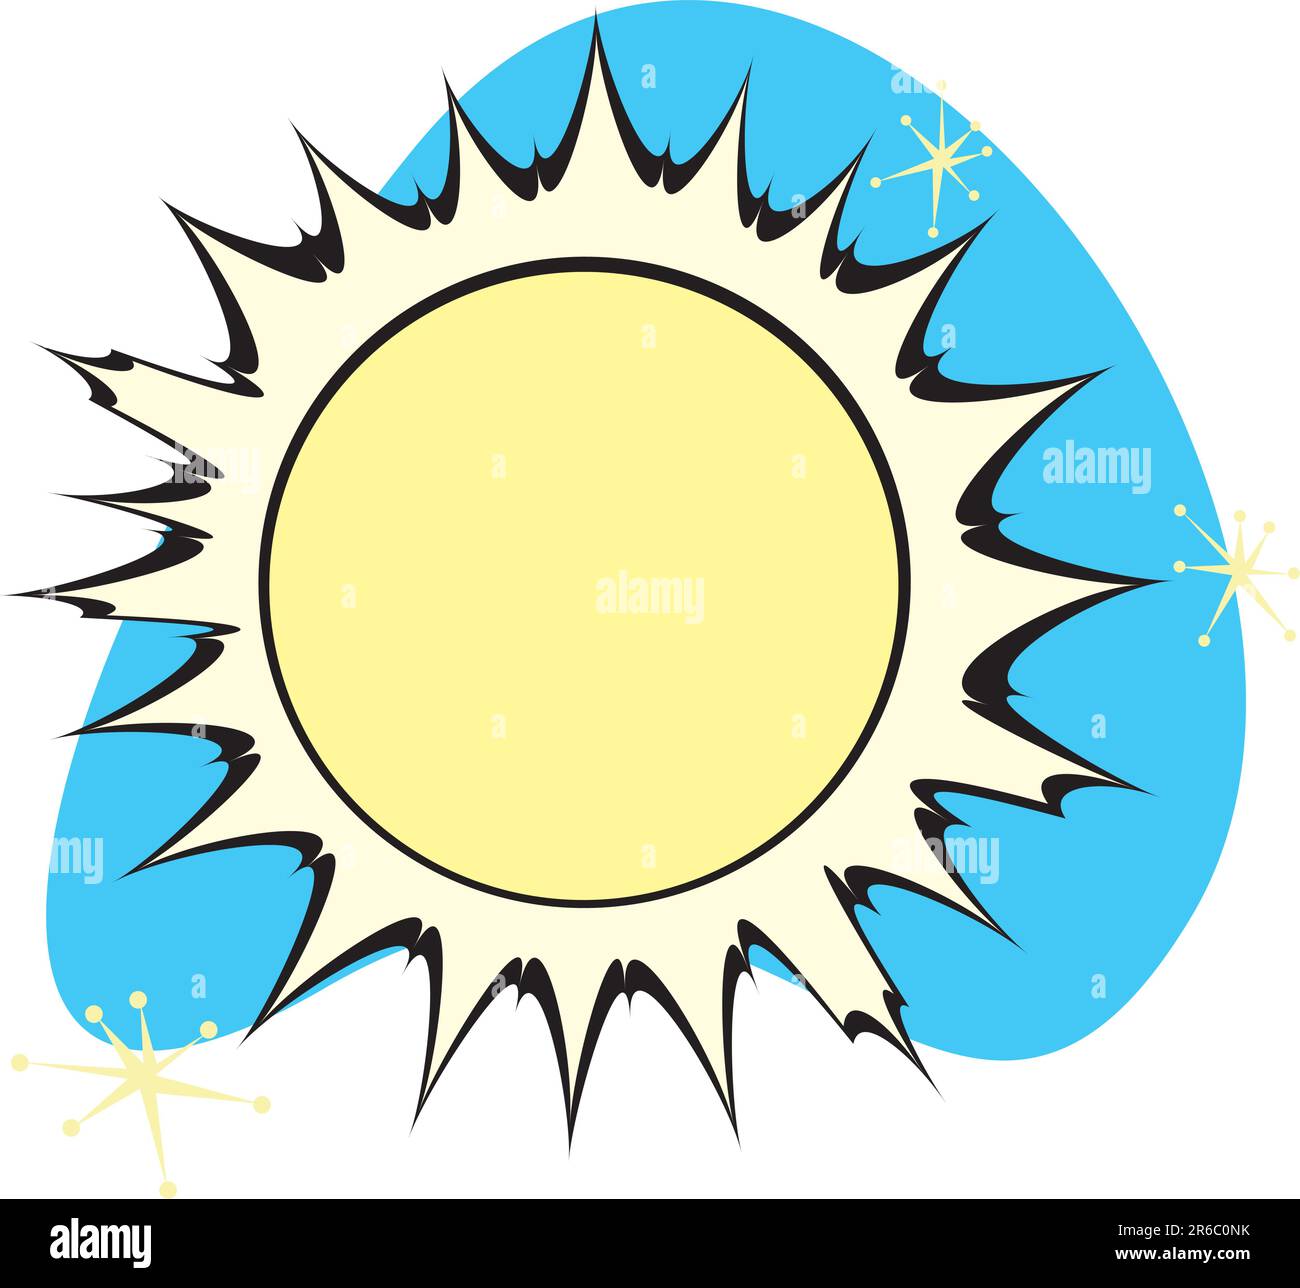 Soleil rétro fait partie d'un ensemble complet de système solaire planètes pour le téléchargement. Illustration de Vecteur